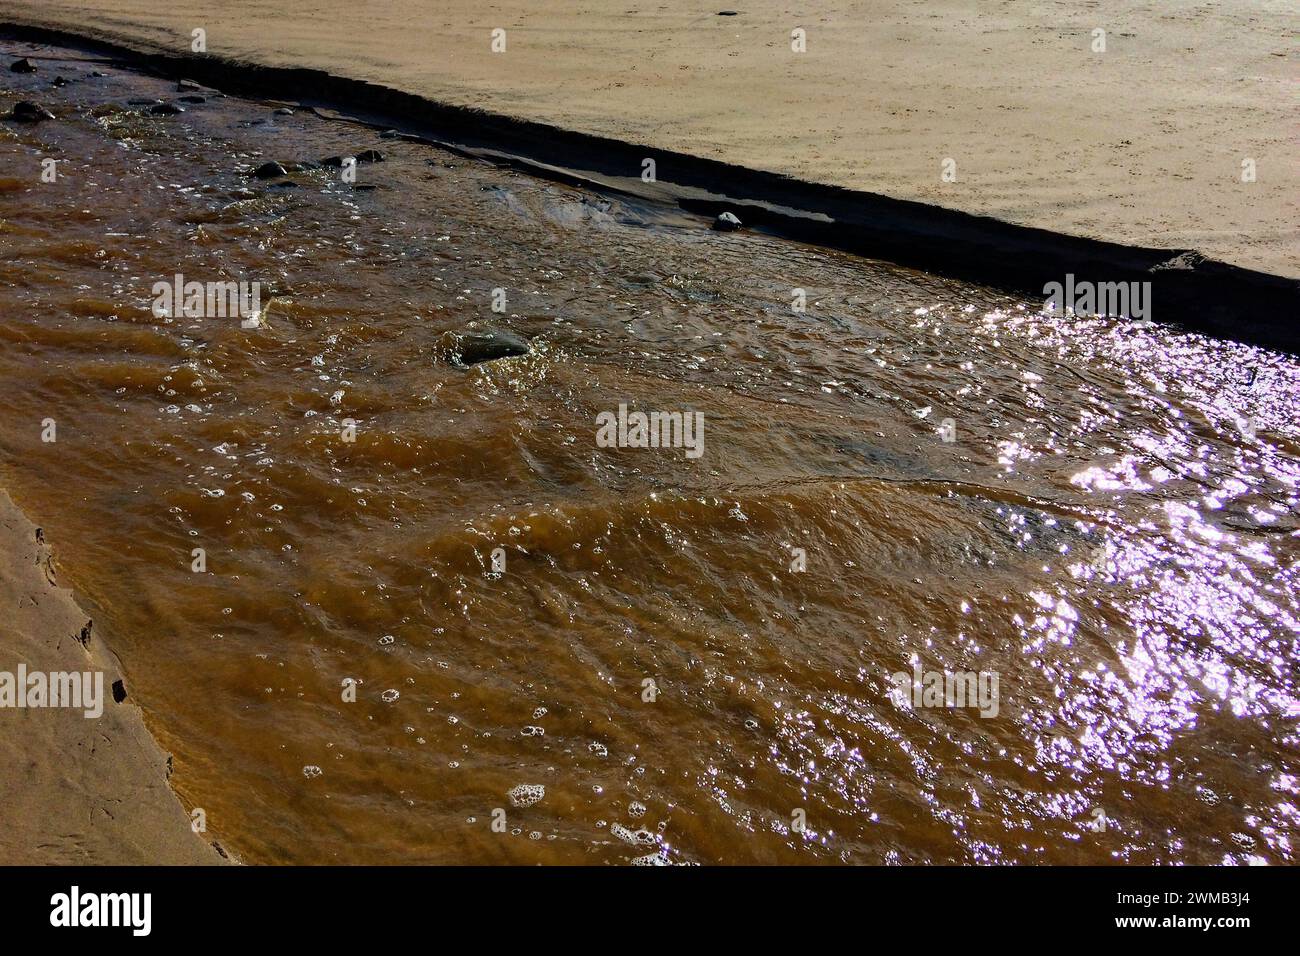 L'immagine cattura un torrente fangoso che scorre su una superficie sabbiosa, con la luce del sole che si riflette sul fango e sull'acqua bagnati. Foto Stock